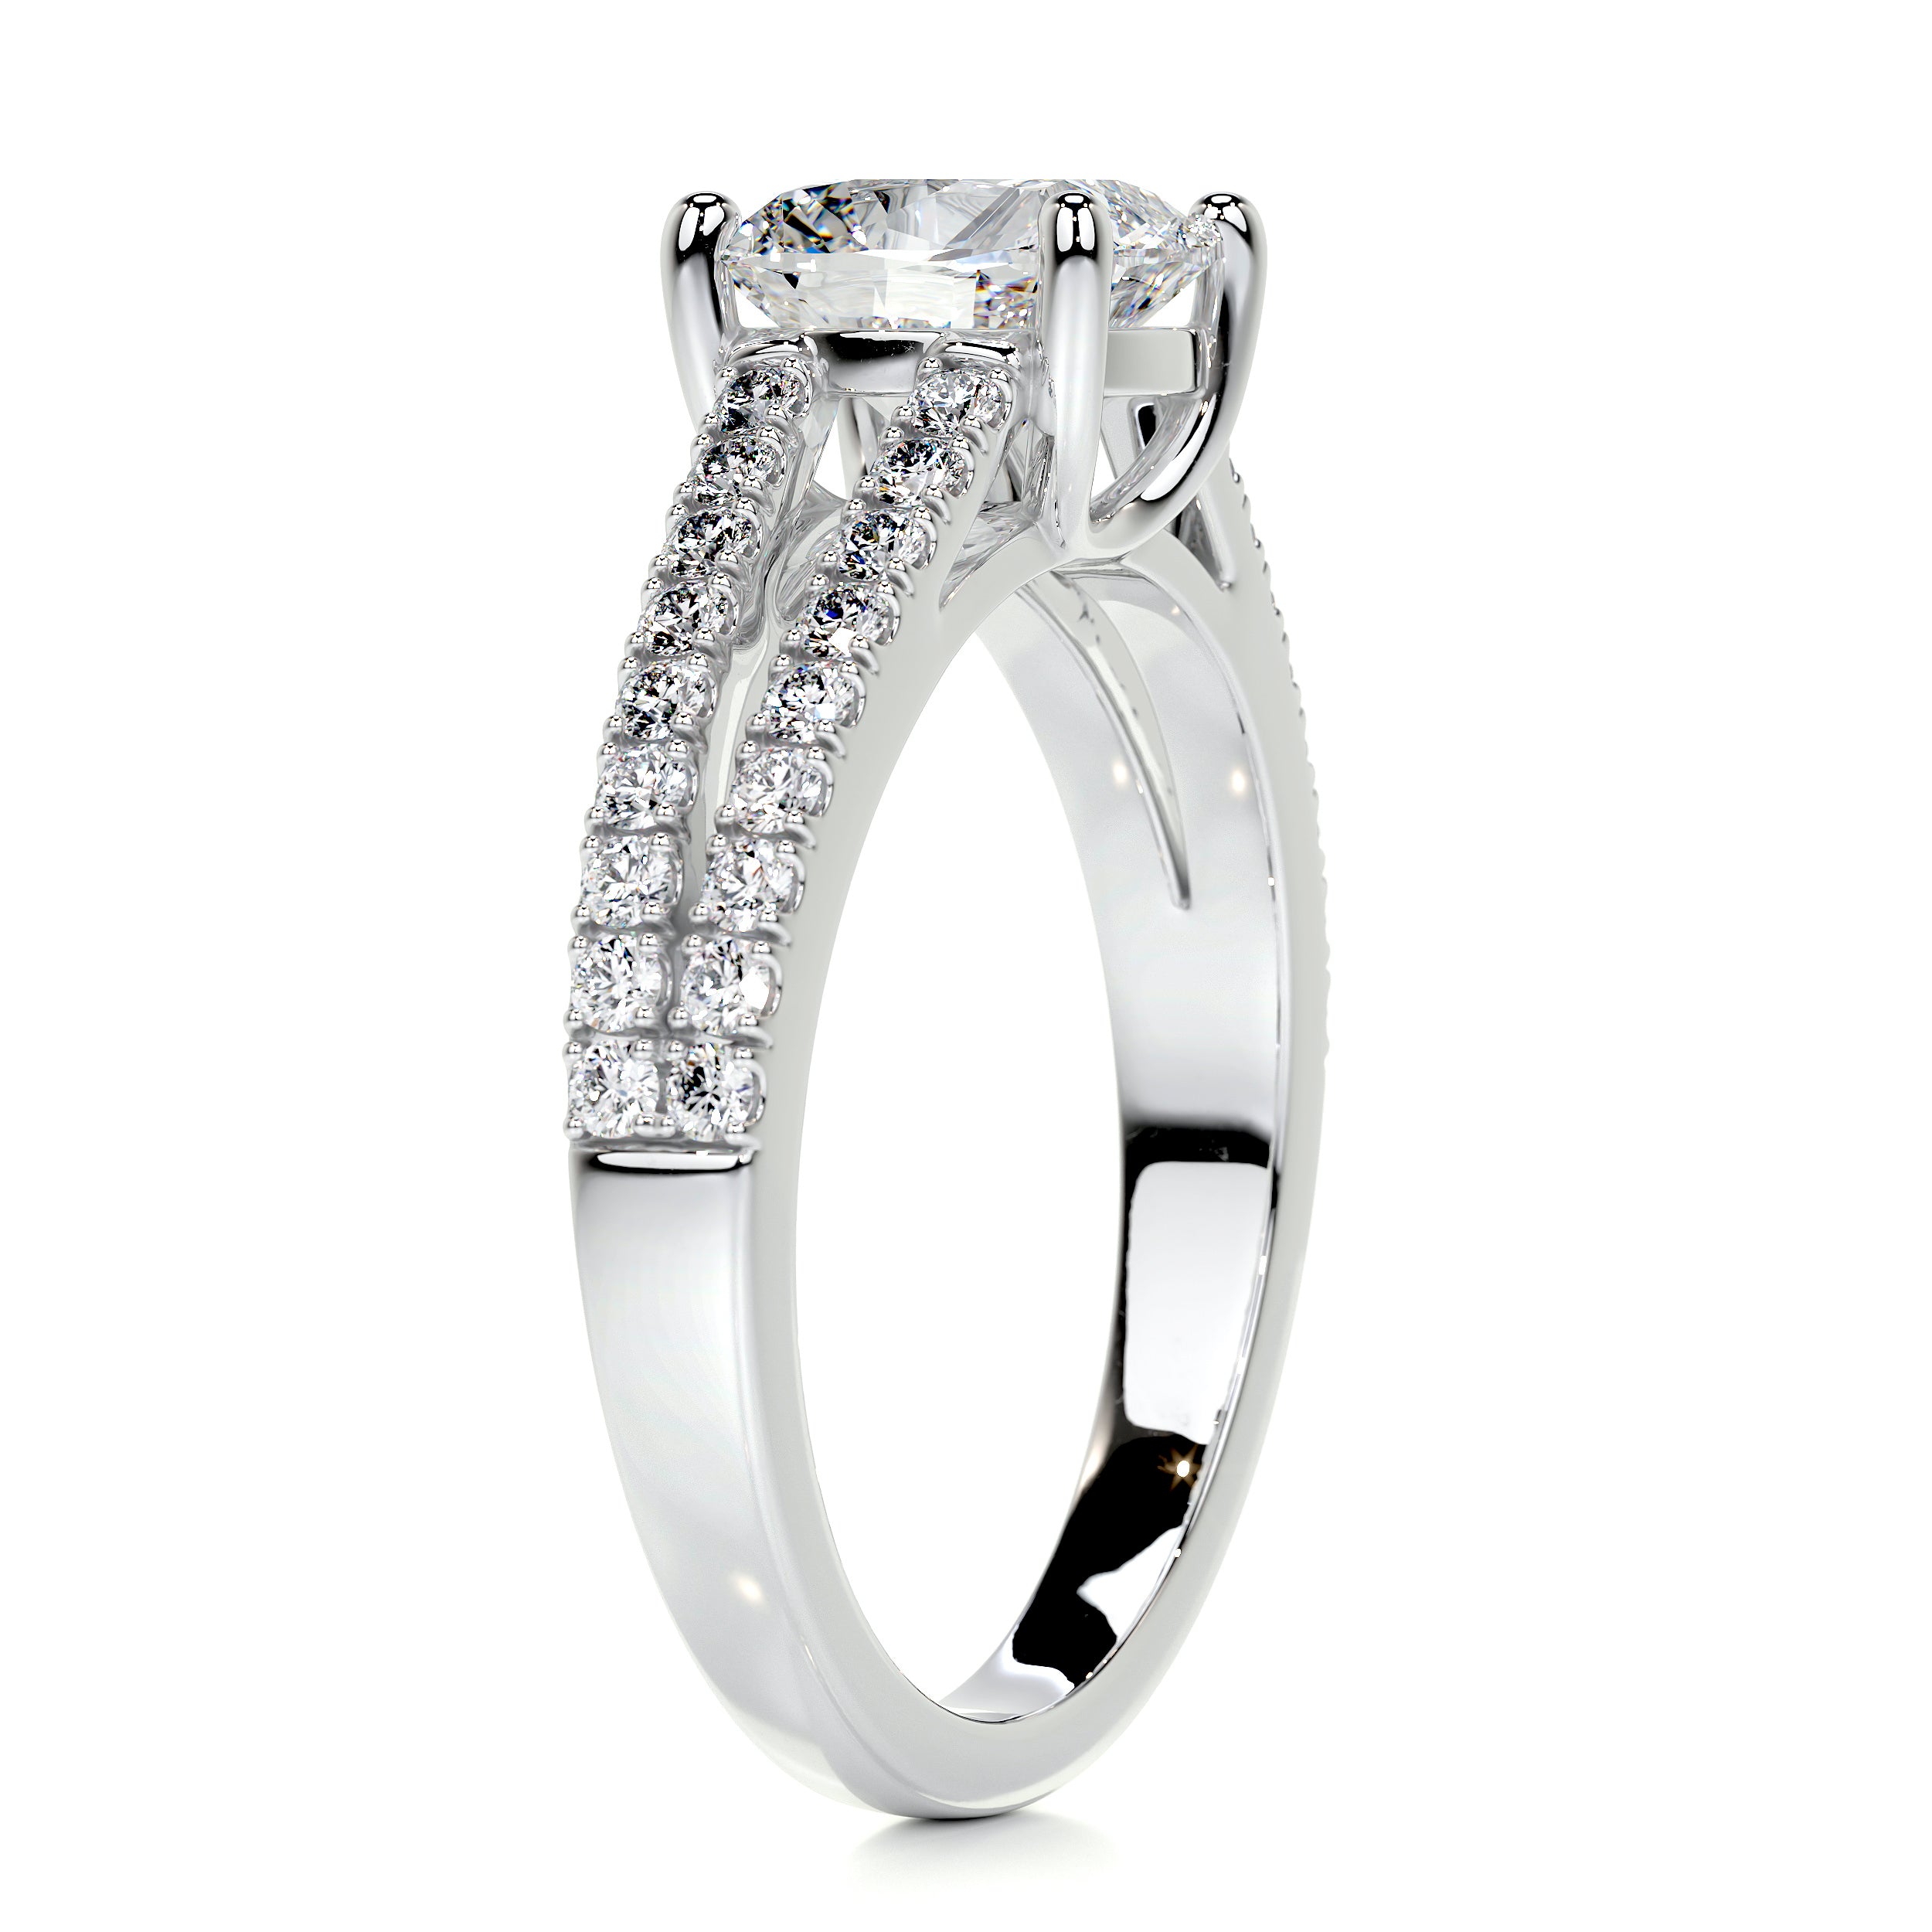 Sadie Diamond Engagement Ring   (2 Carat) -14K White Gold